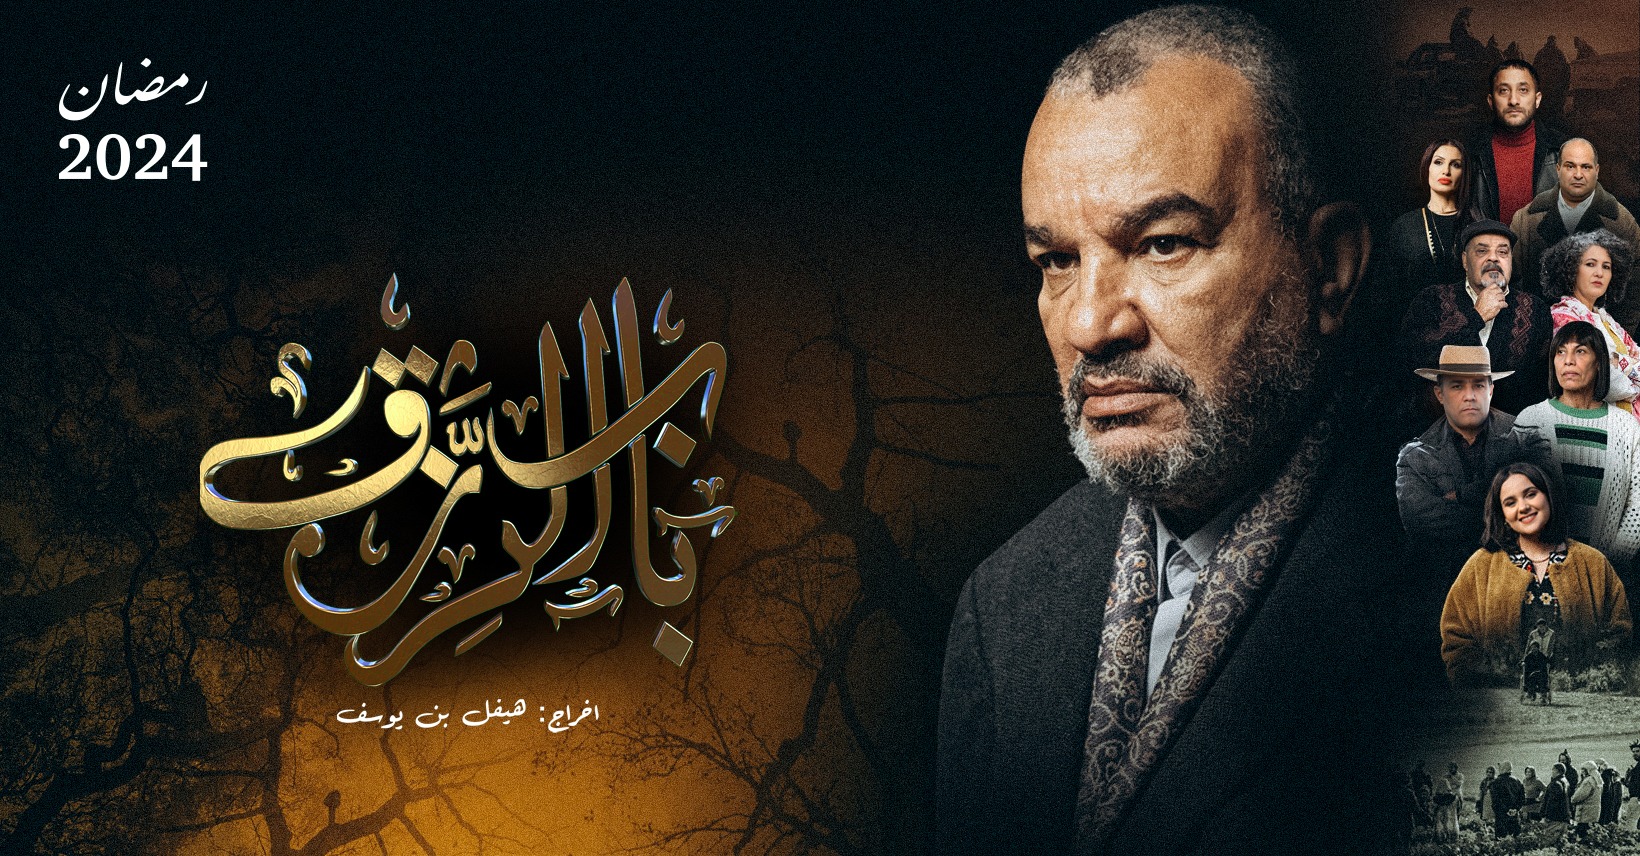 مسلسل "باب الرزق" يتوجه إلى شاشات التلفزة الوطنية في رمضان 2024